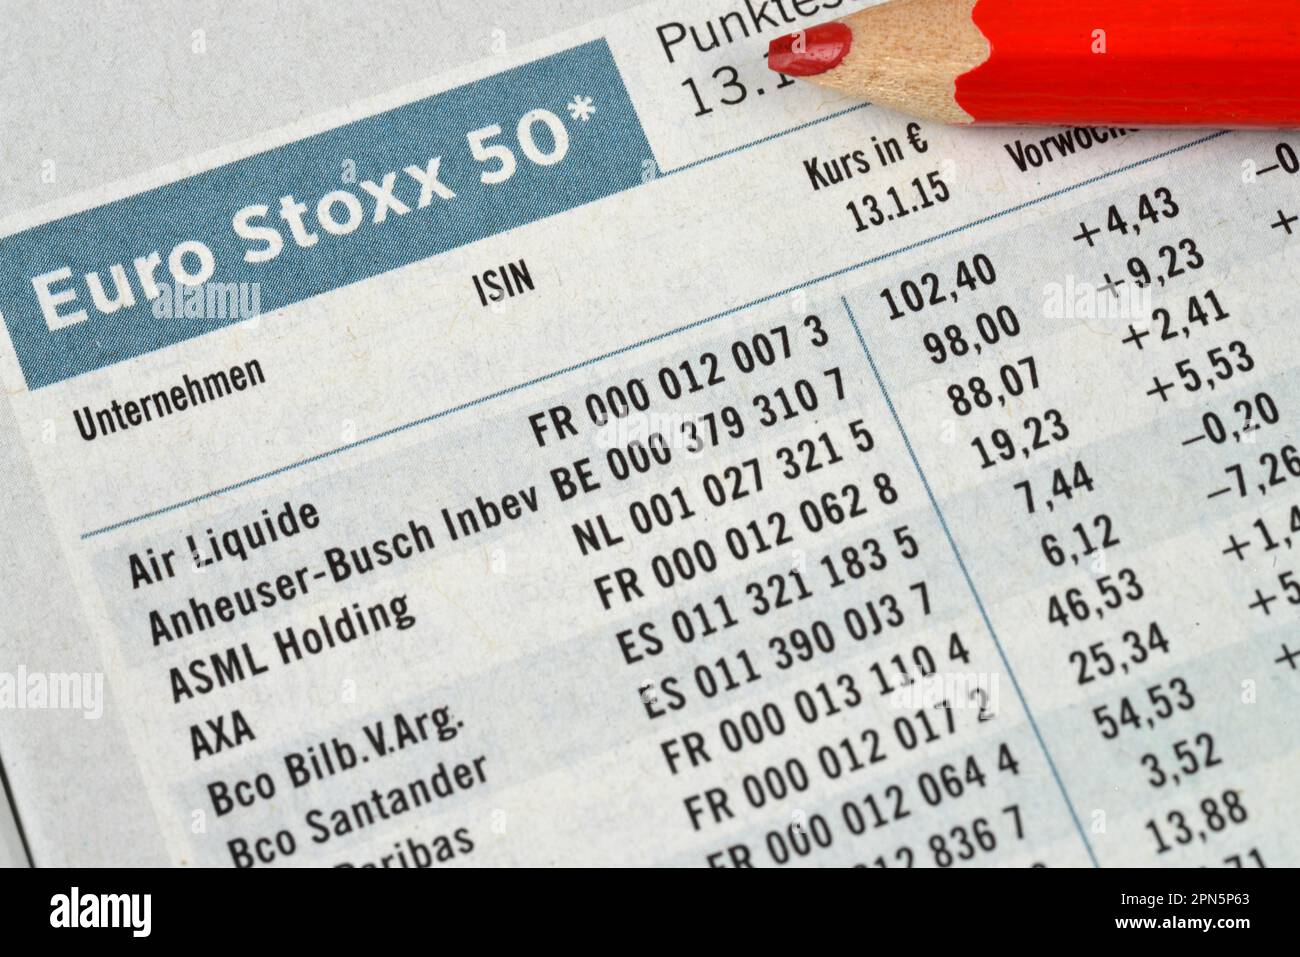 Newspaper, stock market section, stock market, euro Stoxx 50 Stock Photo